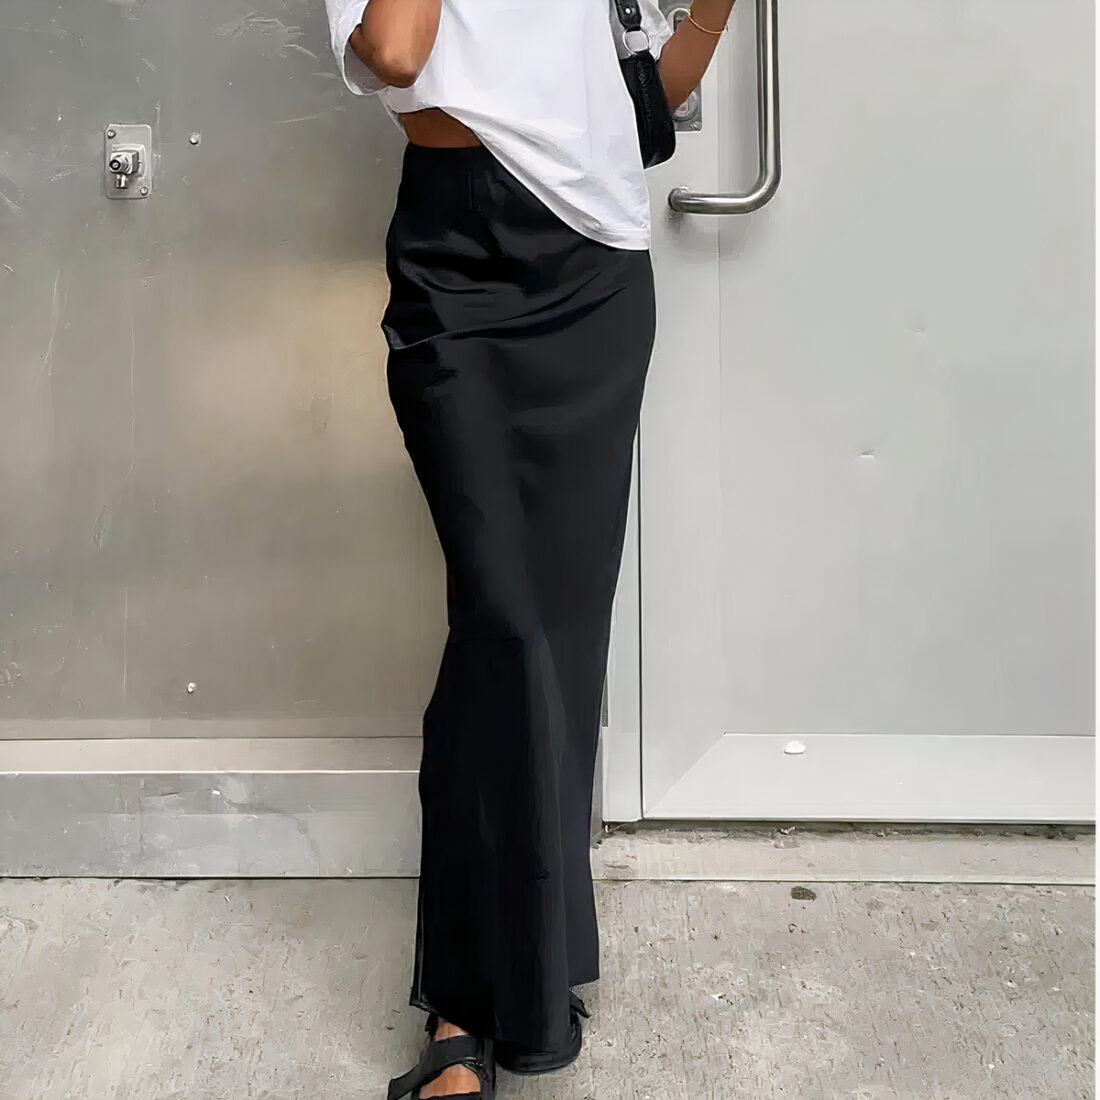 Une femme porte une jupe longue de couleur noire en satin, de coupe slim. Elle a un haut blanc, un sac noir sur l'épaule gauche et des sandales noires aux pieds. Elle debout sur un sol en béton gris et derrière elle se trouve un mur de couleur aluminium et une porte grise.